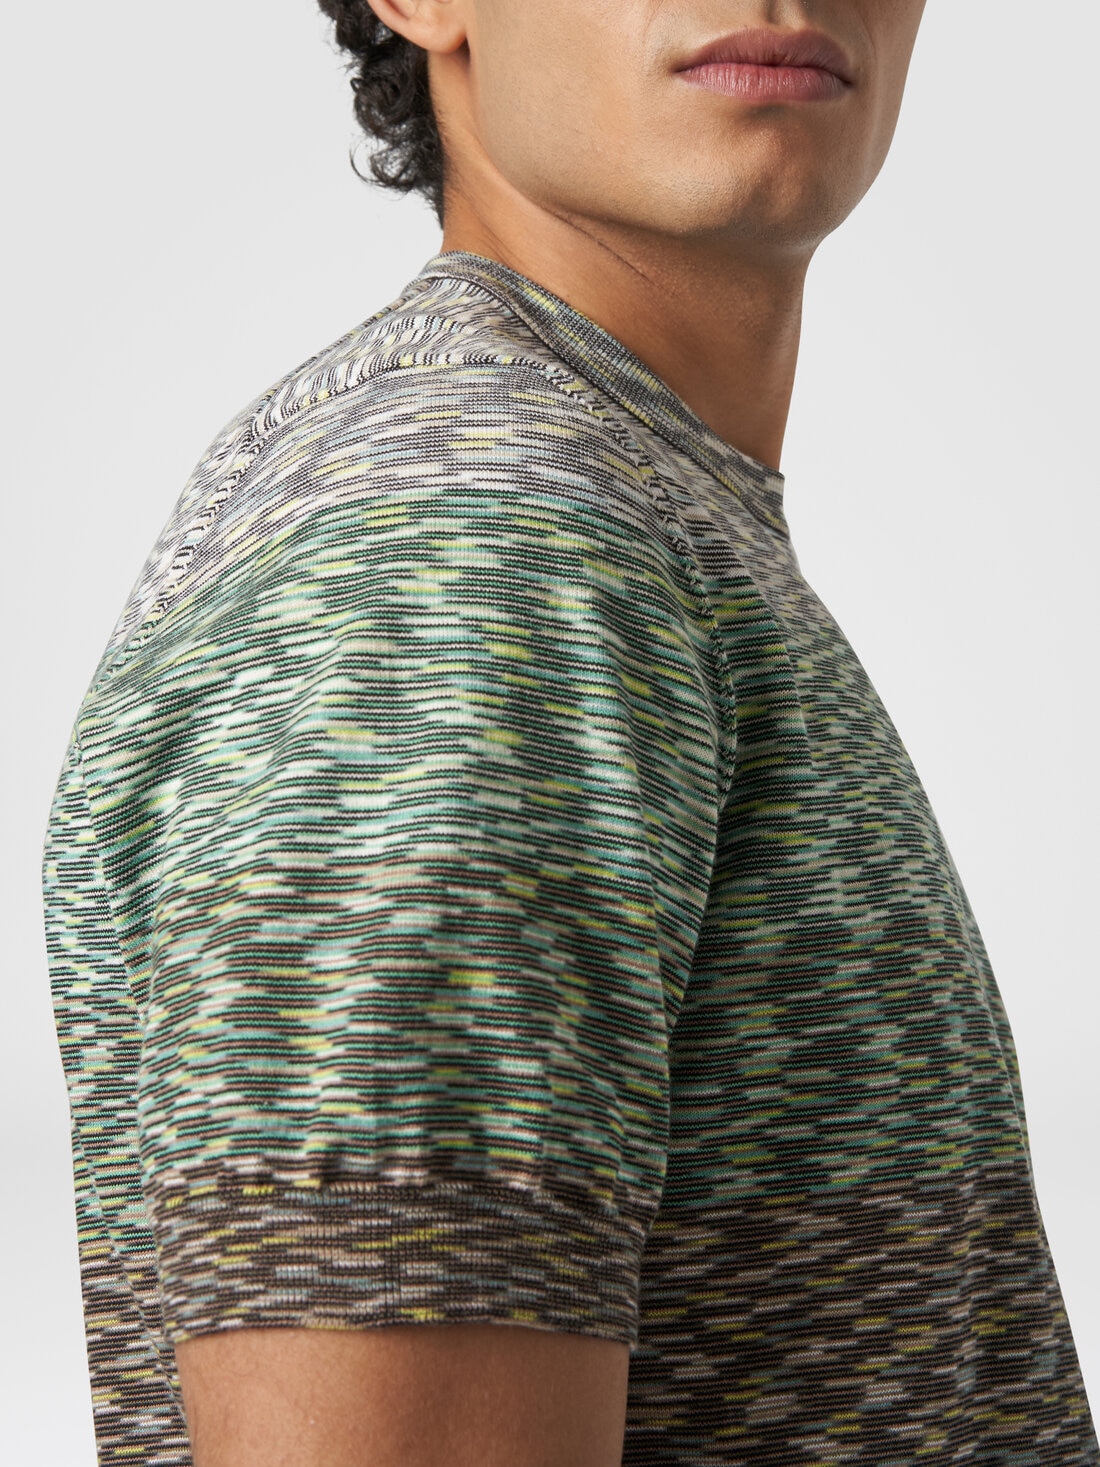 Camiseta de cuello redondo en algodón flameado degradado, Multicolor  - US24SL0IBK012QS612U - 4